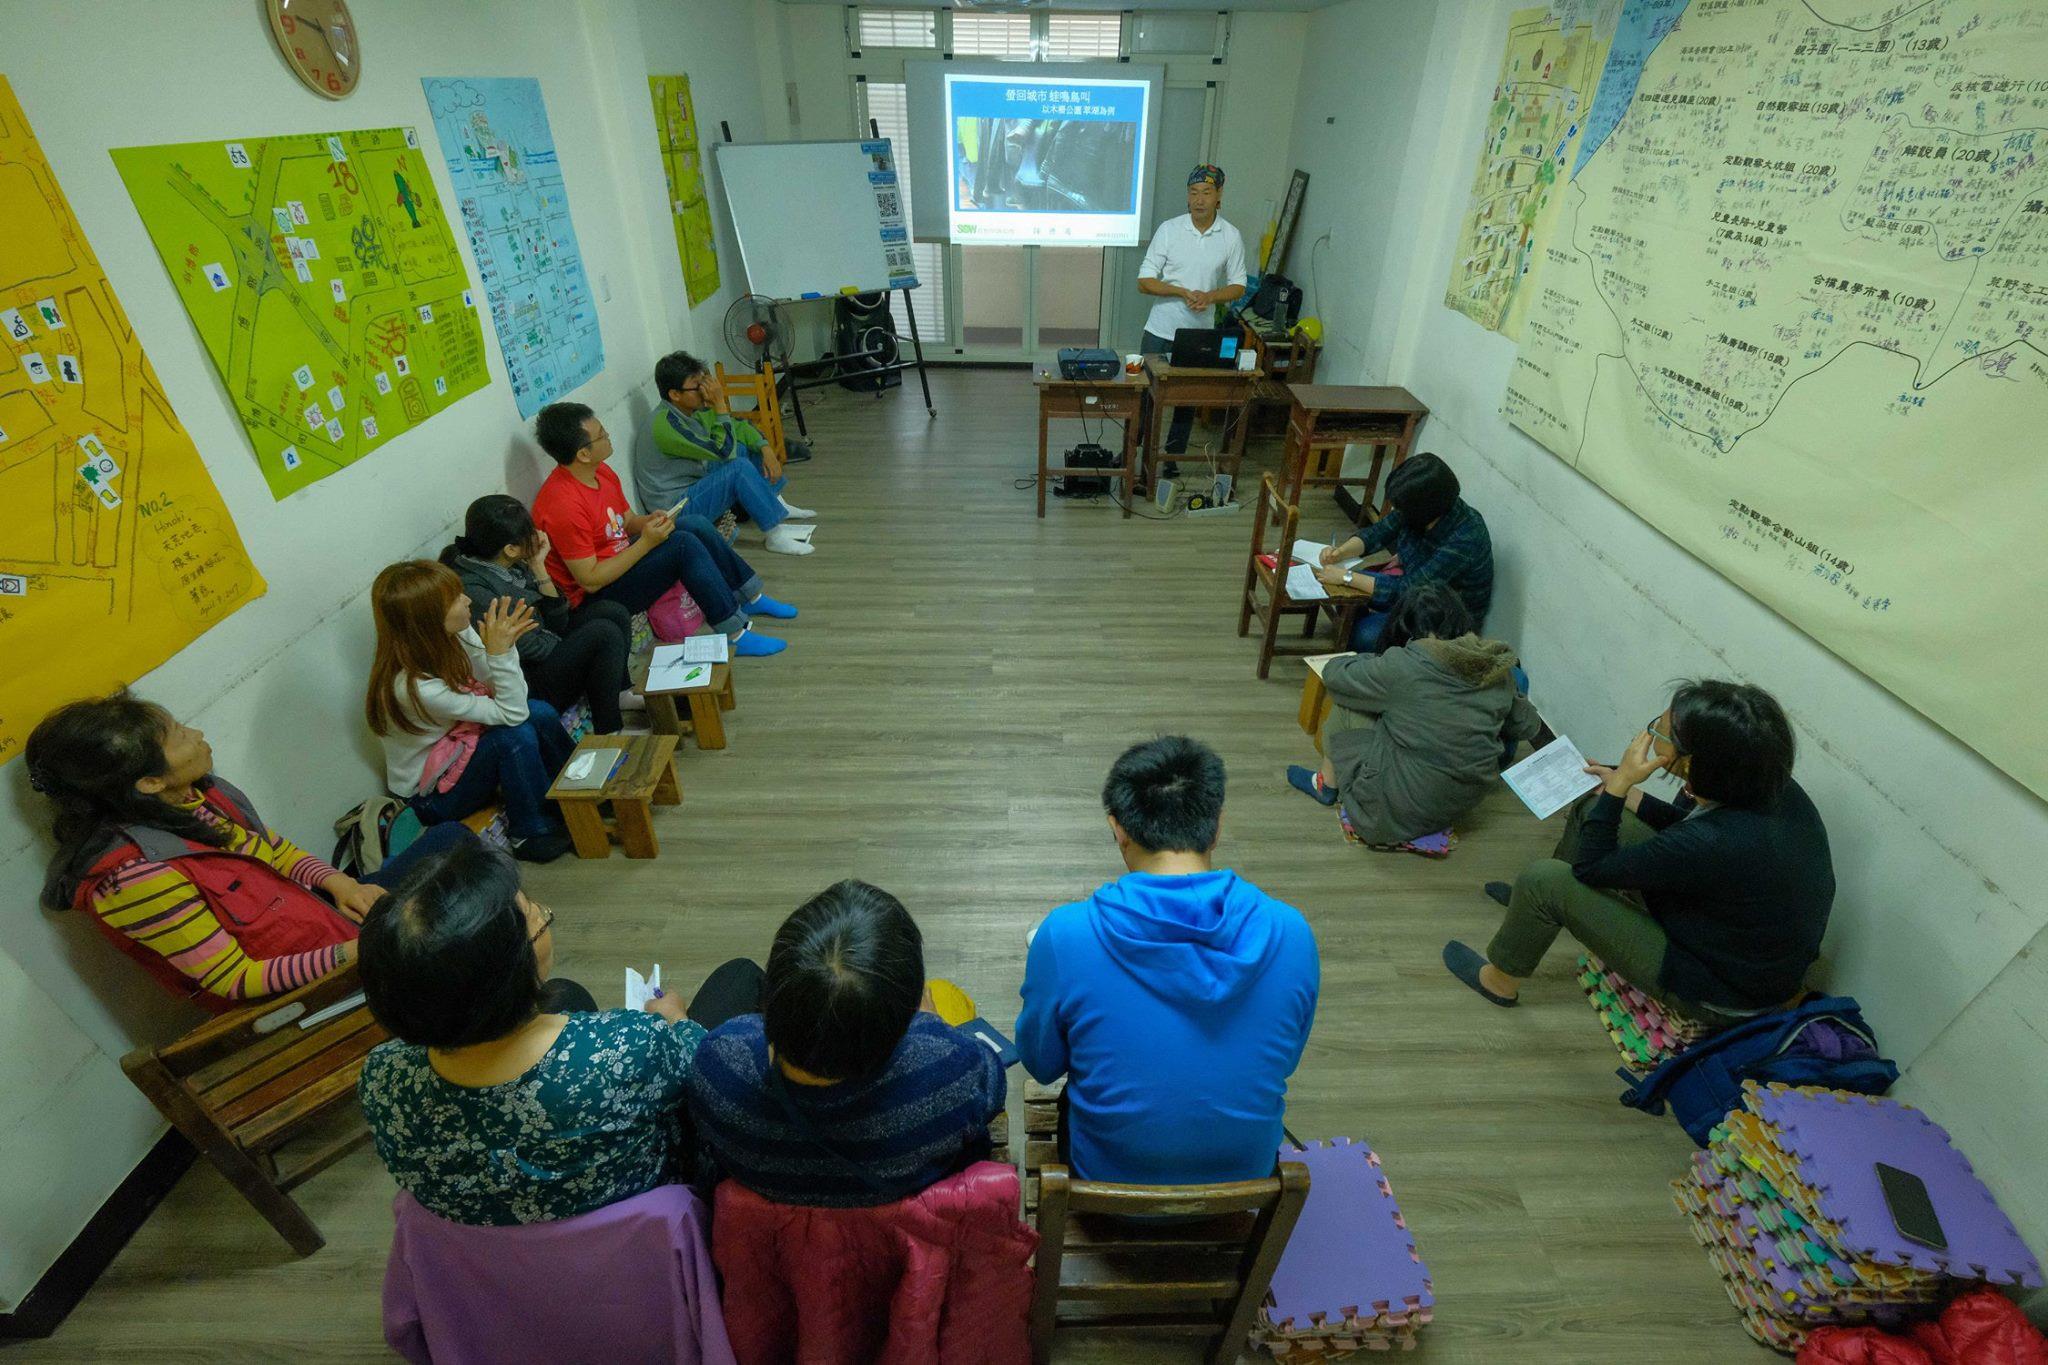 德鴻老大向解說員培訓課程的學員分享自己的棲地營造經驗